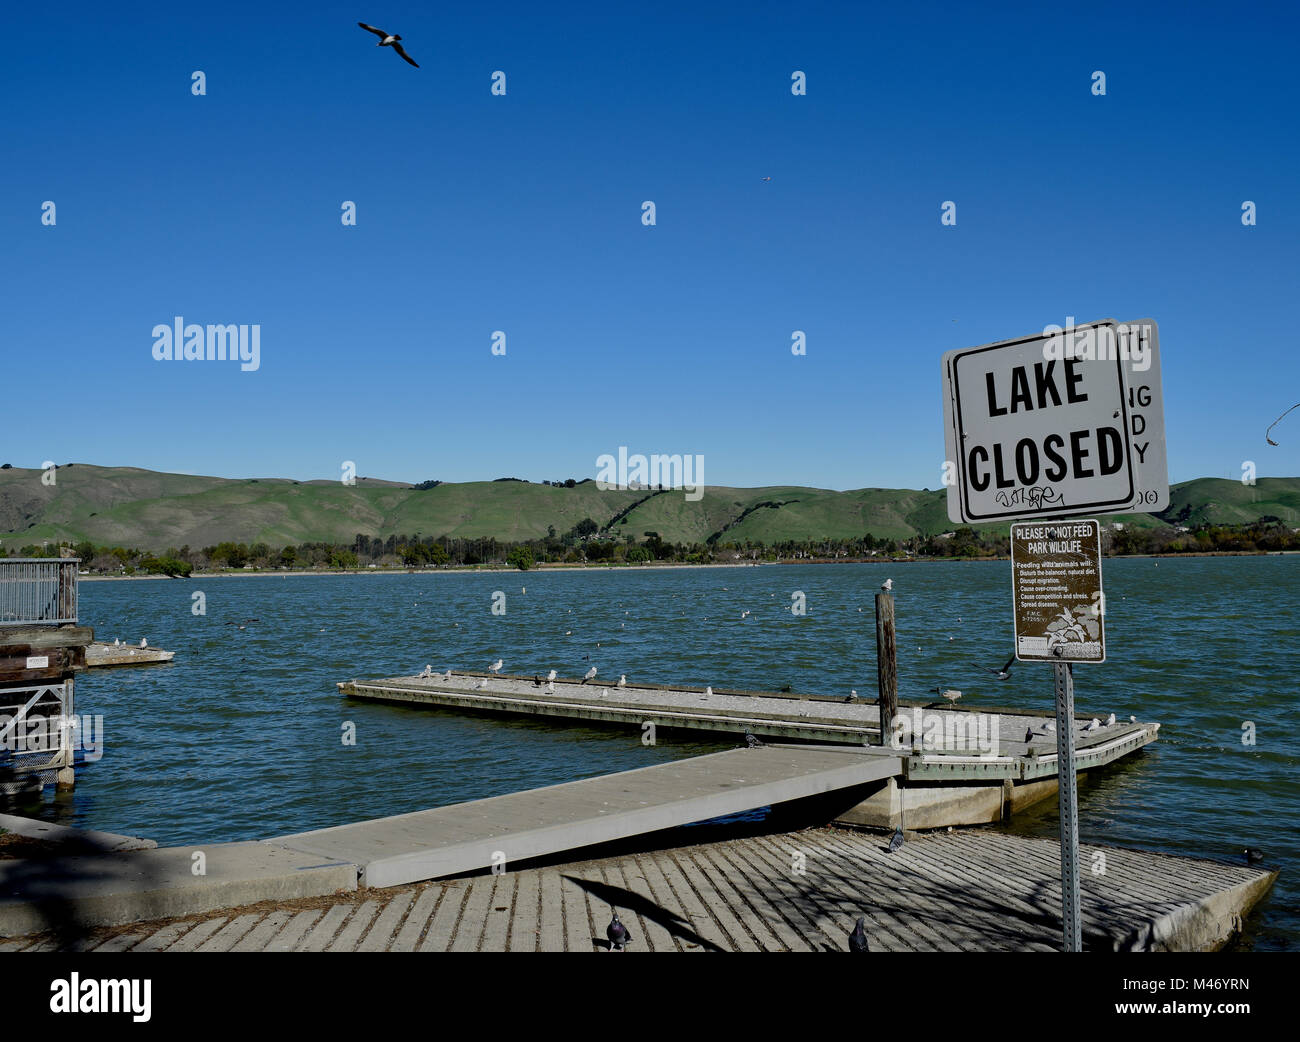 Lake fermé et ne pas nourrir la faune signe au lac Elizabeth, Central Park, Californie, Etats-Unis Fremont Banque D'Images